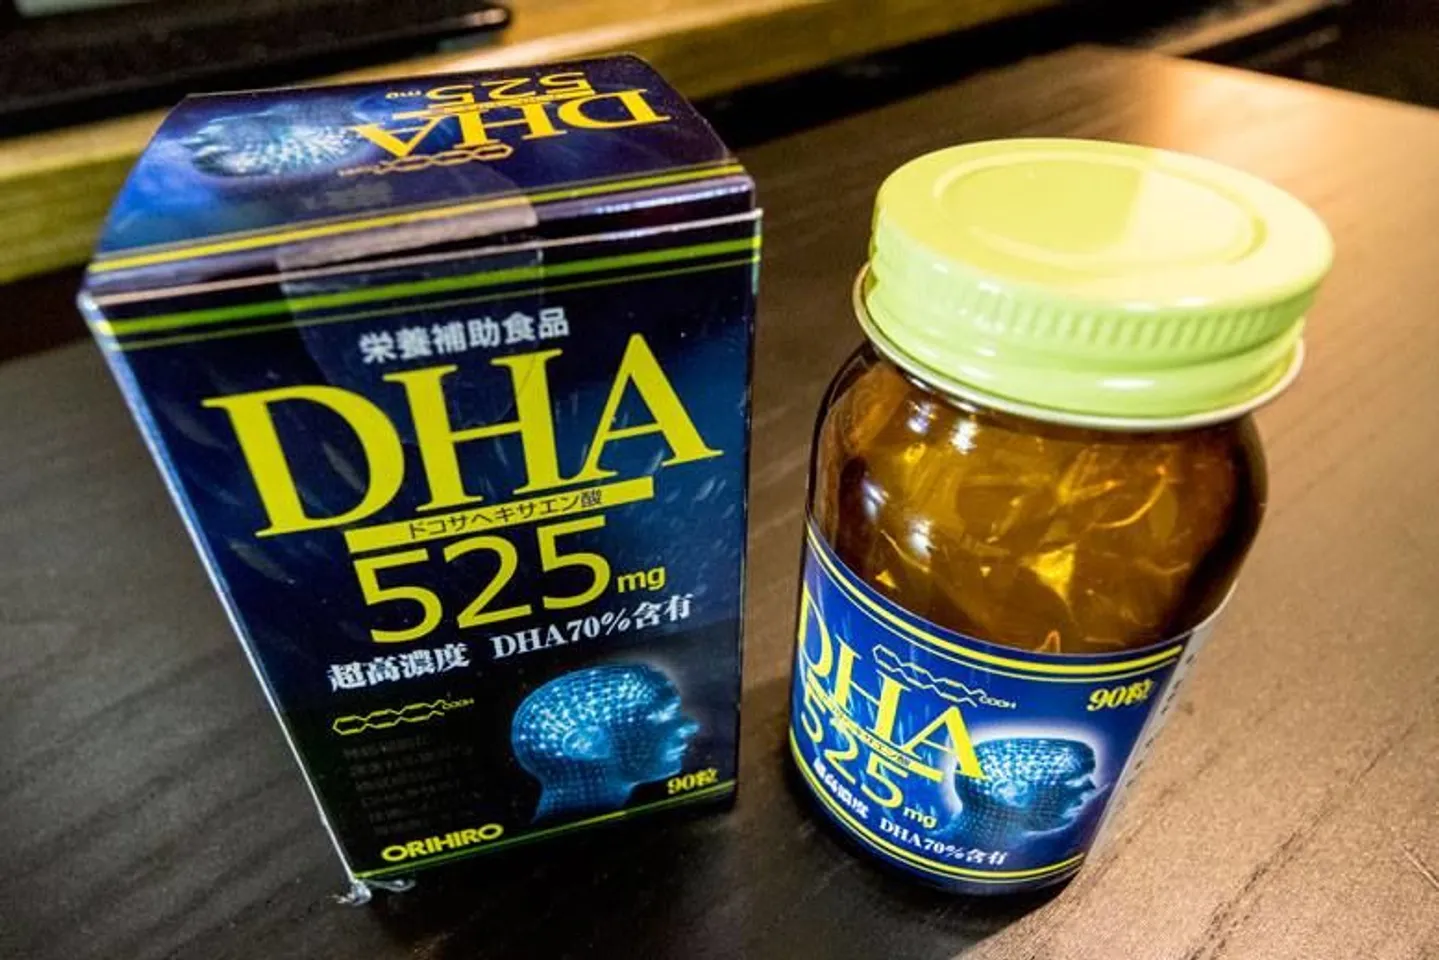 Viên uống bổ não Orihiro DHA 525mg bổ sung DHA giúp tăng cường trí nhớ hiệu quả